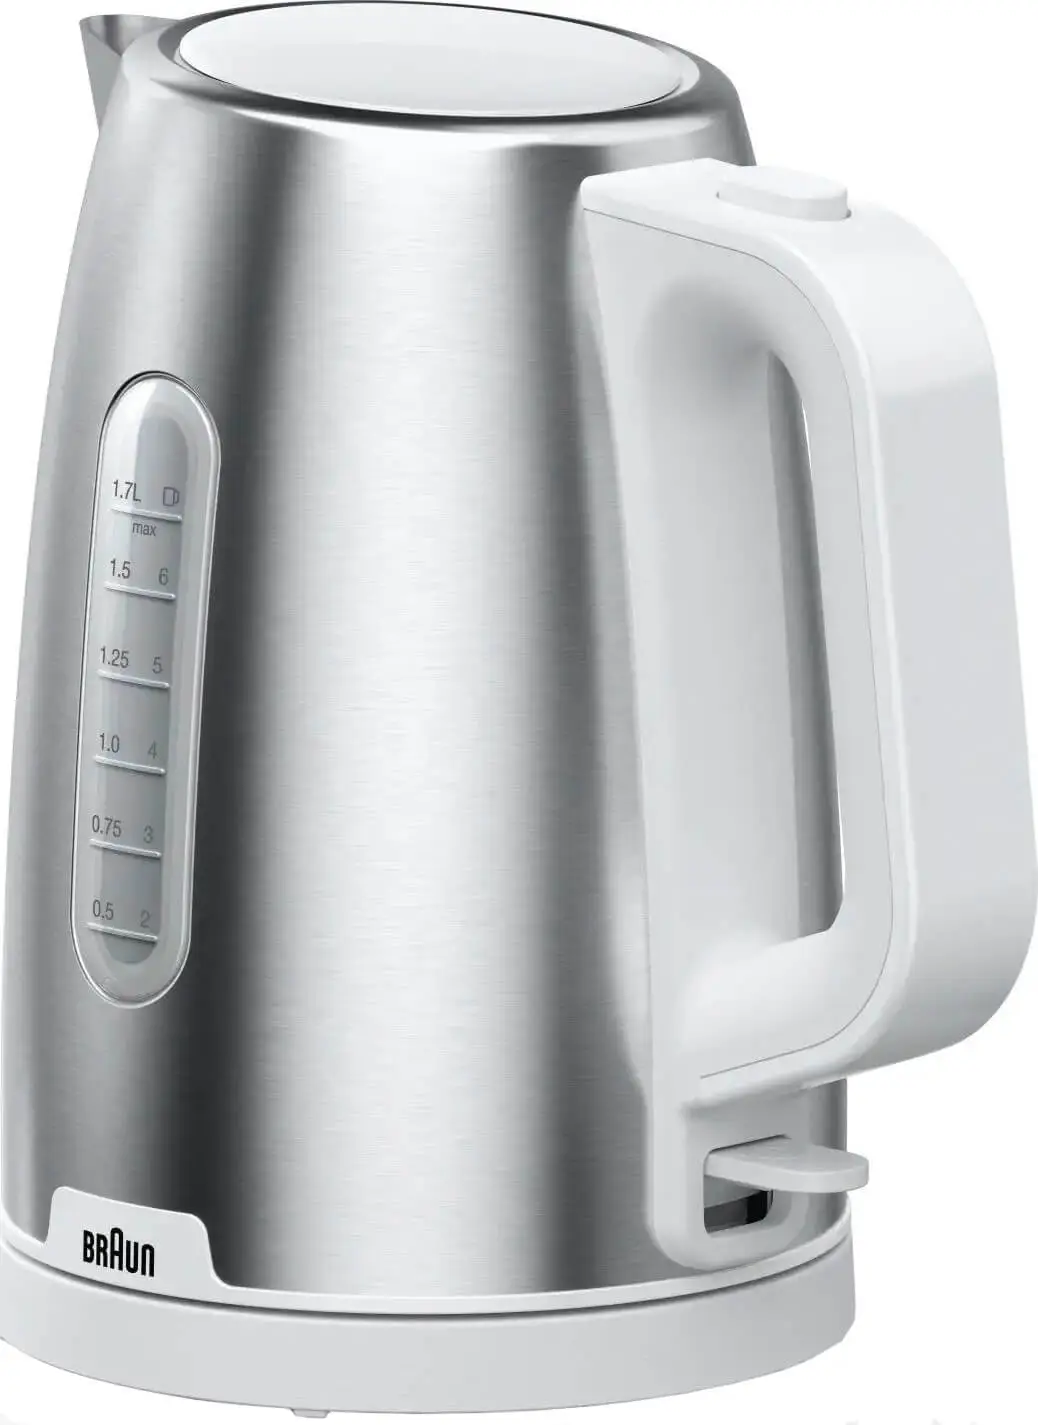 Чайник электрический Braun WK1500WH 1.7 л белый, серебристый бритва braun 71 s1000s серебристый